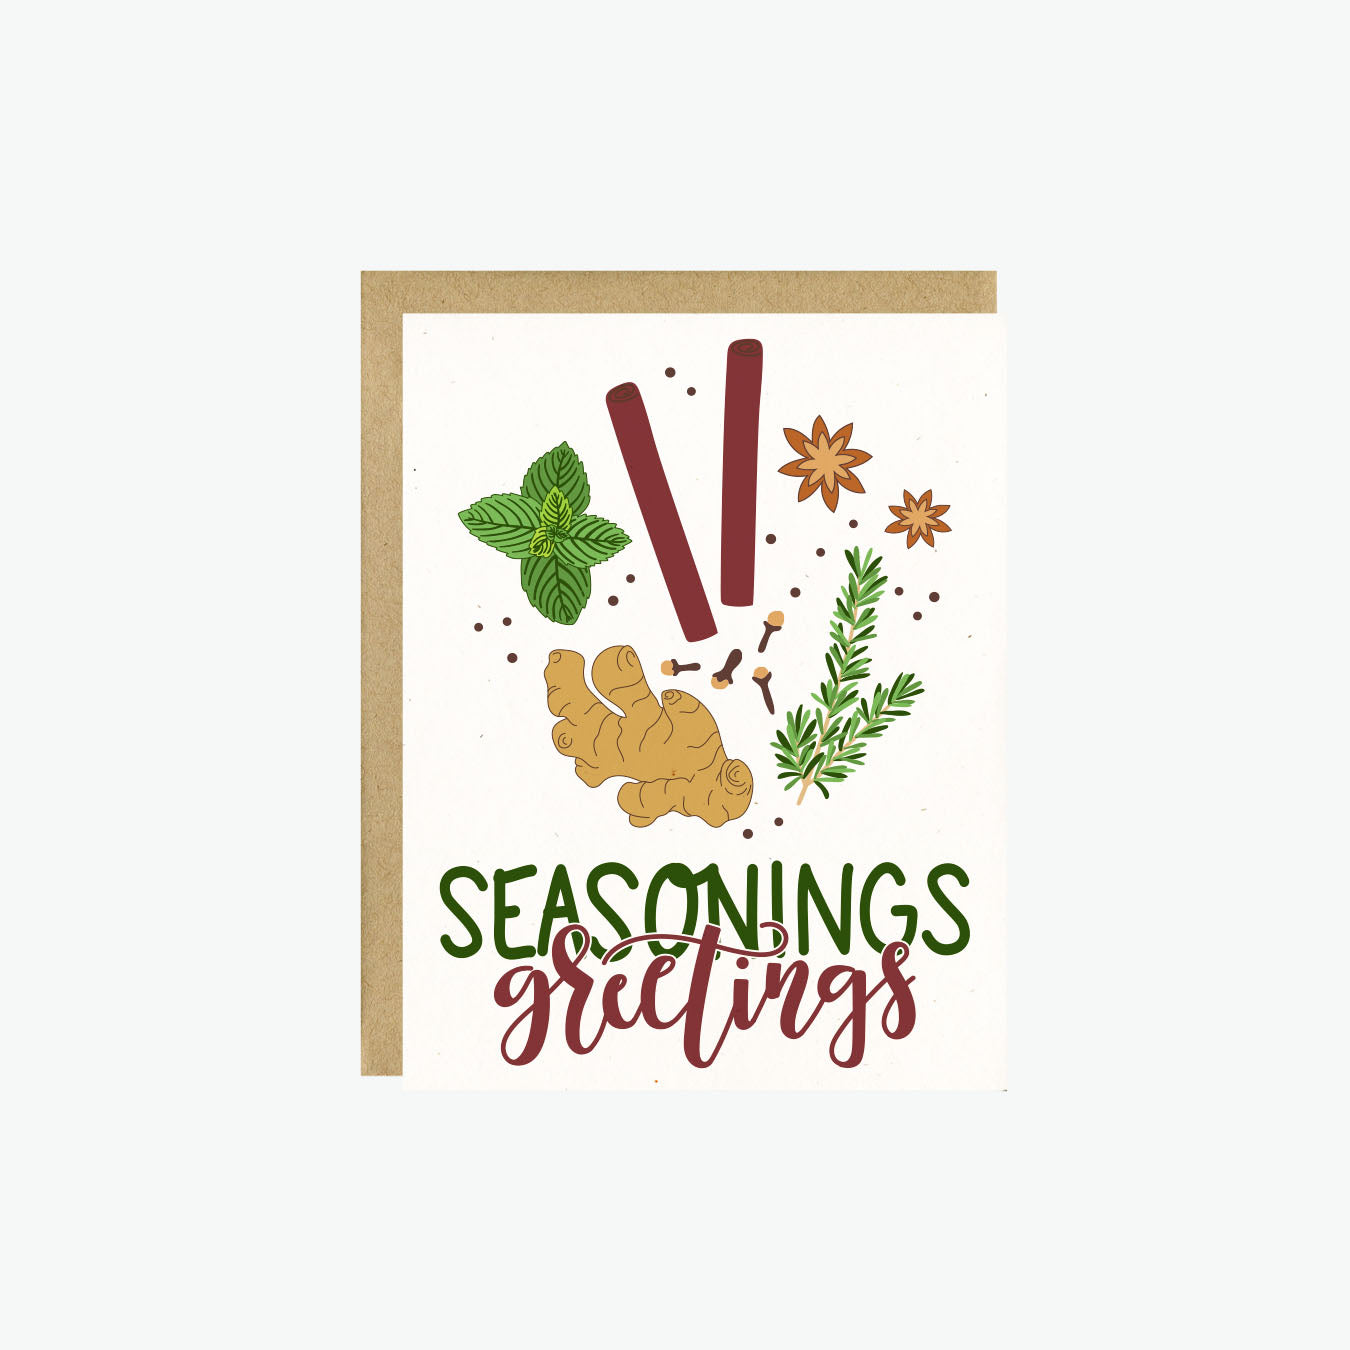 Seasonings Greetings Card